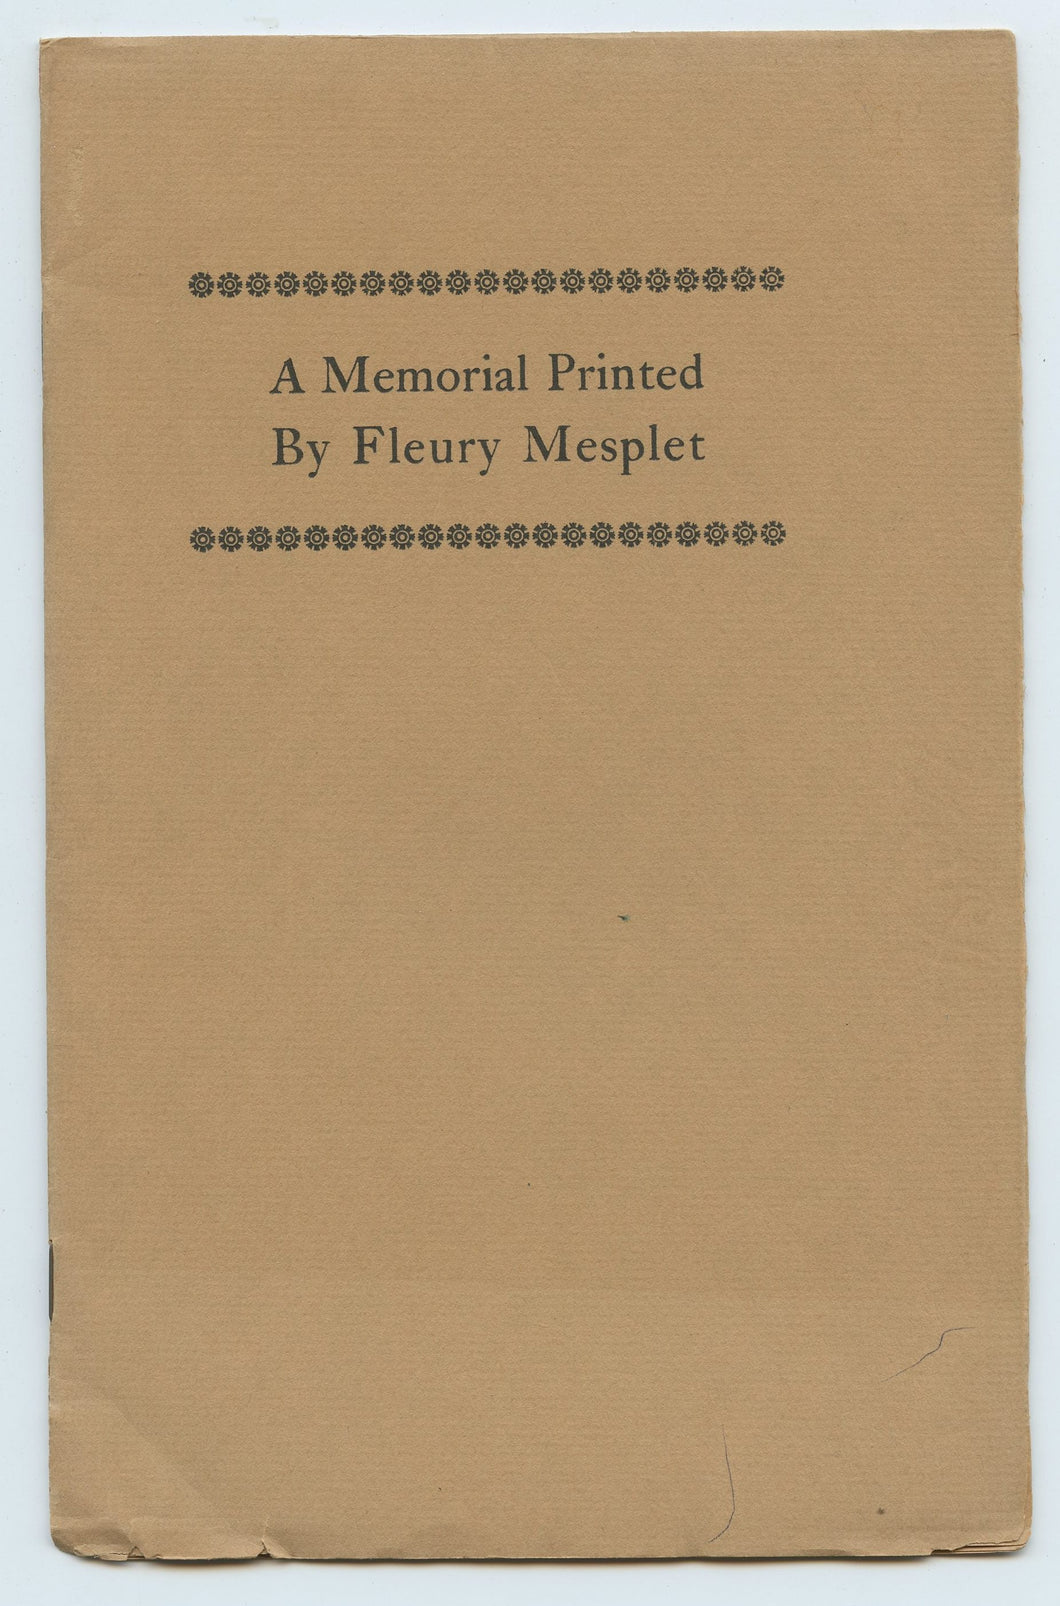 A Memorial Printed By Fleury Mesplet